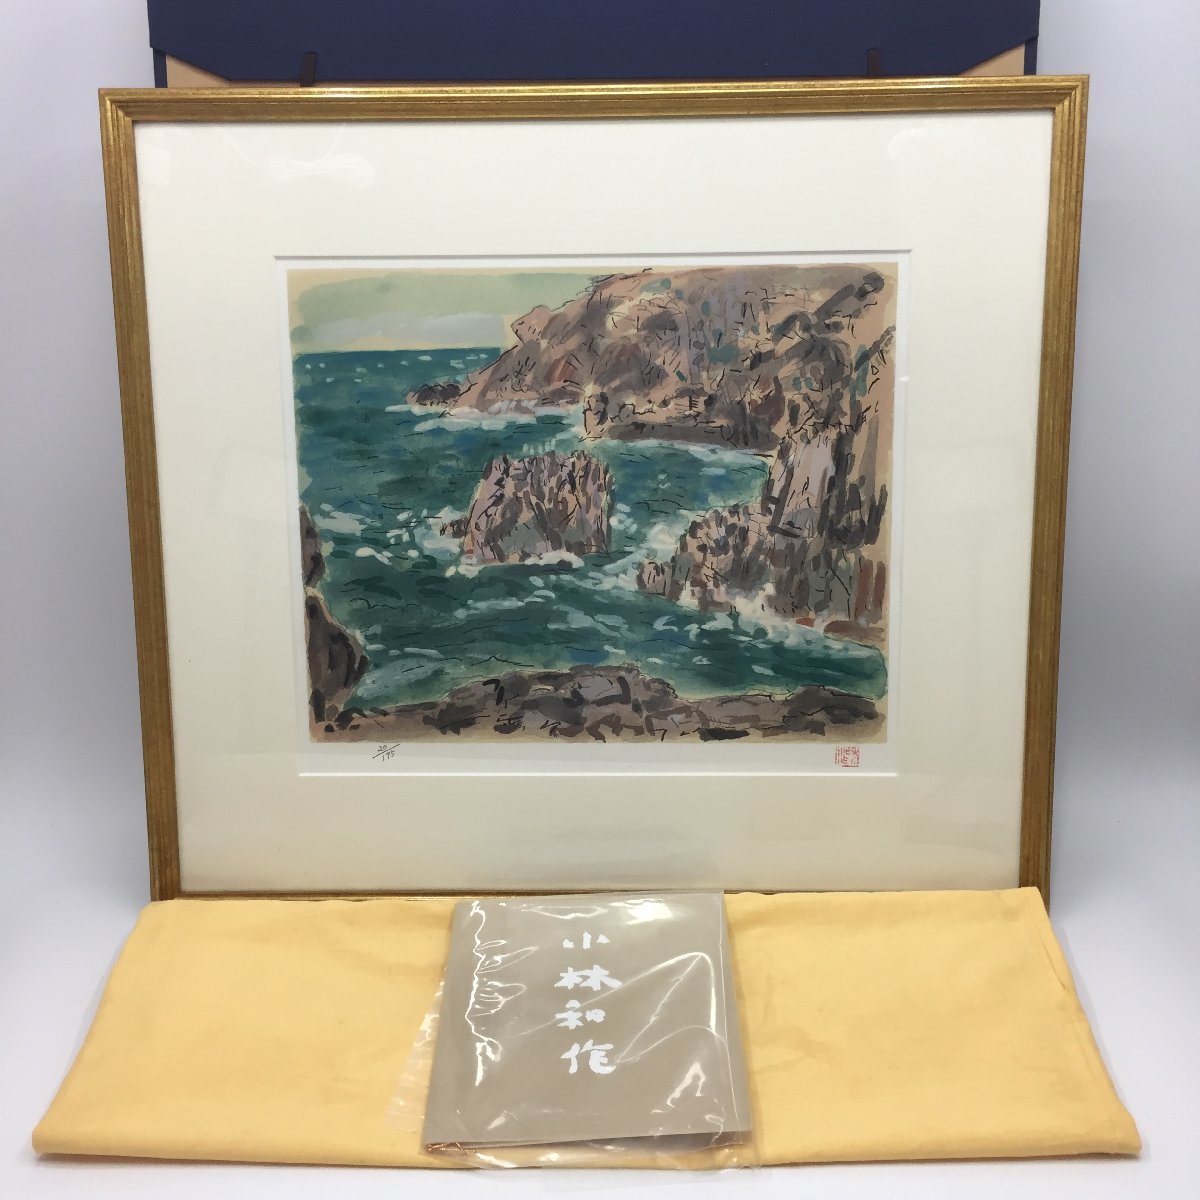 4547-140 [Kawasaku Kobayashi] Lithograph The Sea (Hamada) Limited to 175 copies, in a tatami box, framed, painting, print, fine art, wall decoration, Artwork, Prints, Lithography, Lithograph